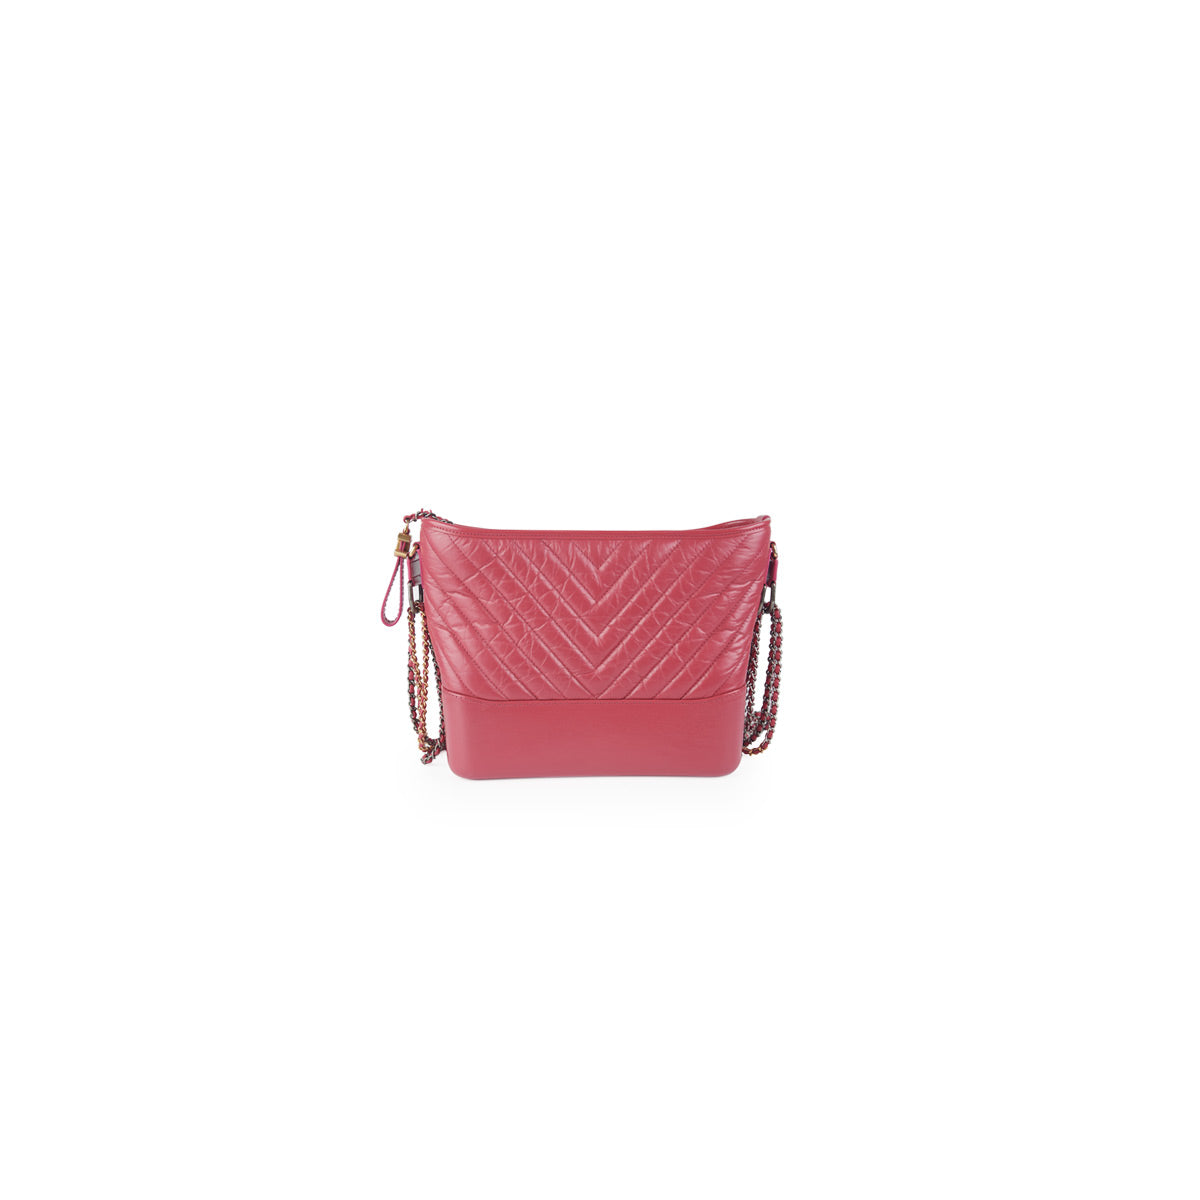 Chanel Gabrielle Small Bag Pink - THE PURSE AFFAIR